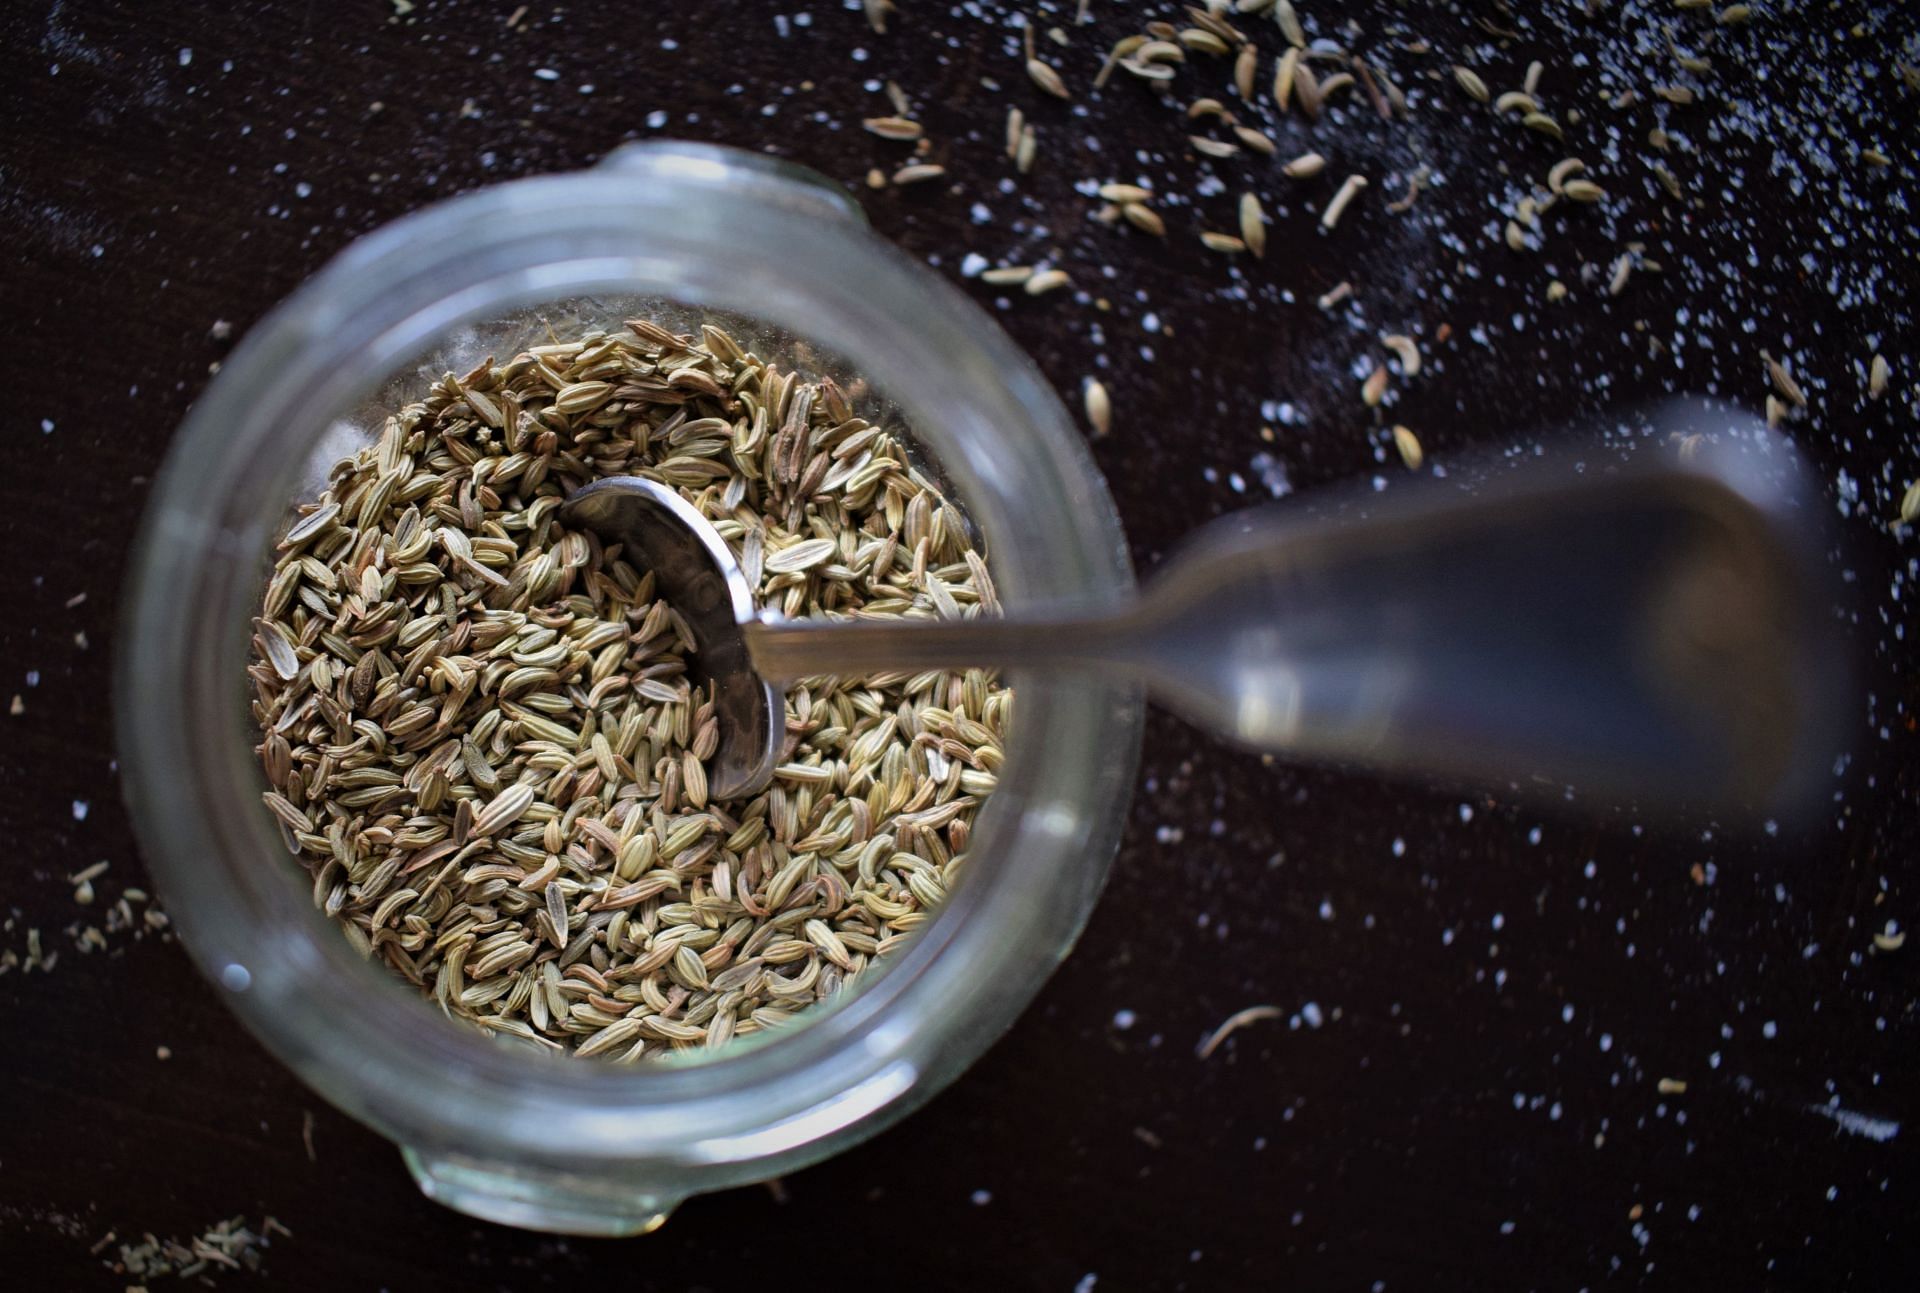 Flax seeds have multiple health benefits. (Image via Unsplash/Tamara Gak)